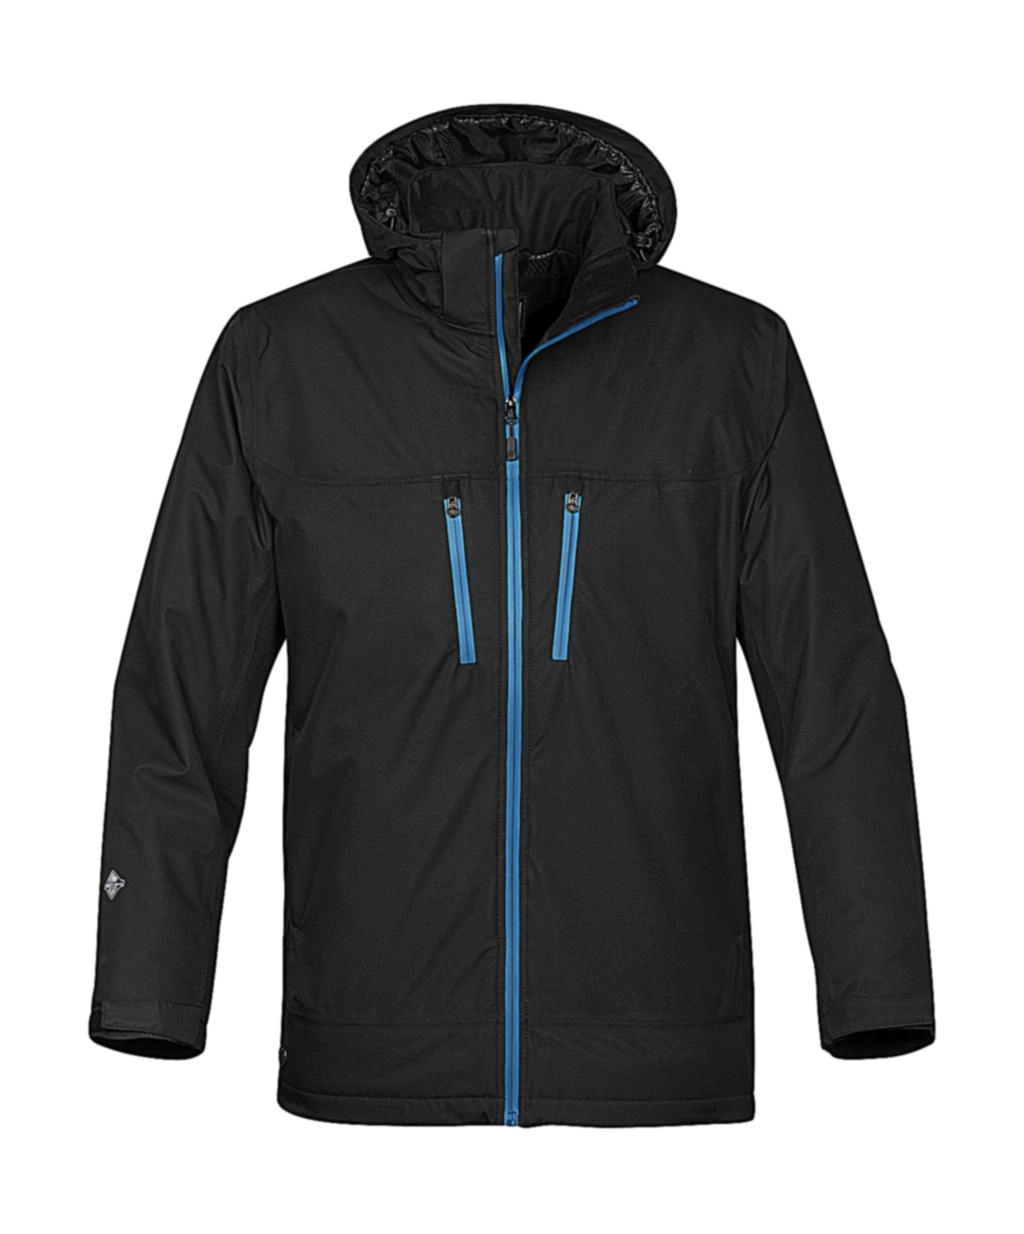 Snowburst Thermal Shell Jacket zum Besticken und Bedrucken in der Farbe Black/Electric mit Ihren Logo, Schriftzug oder Motiv.